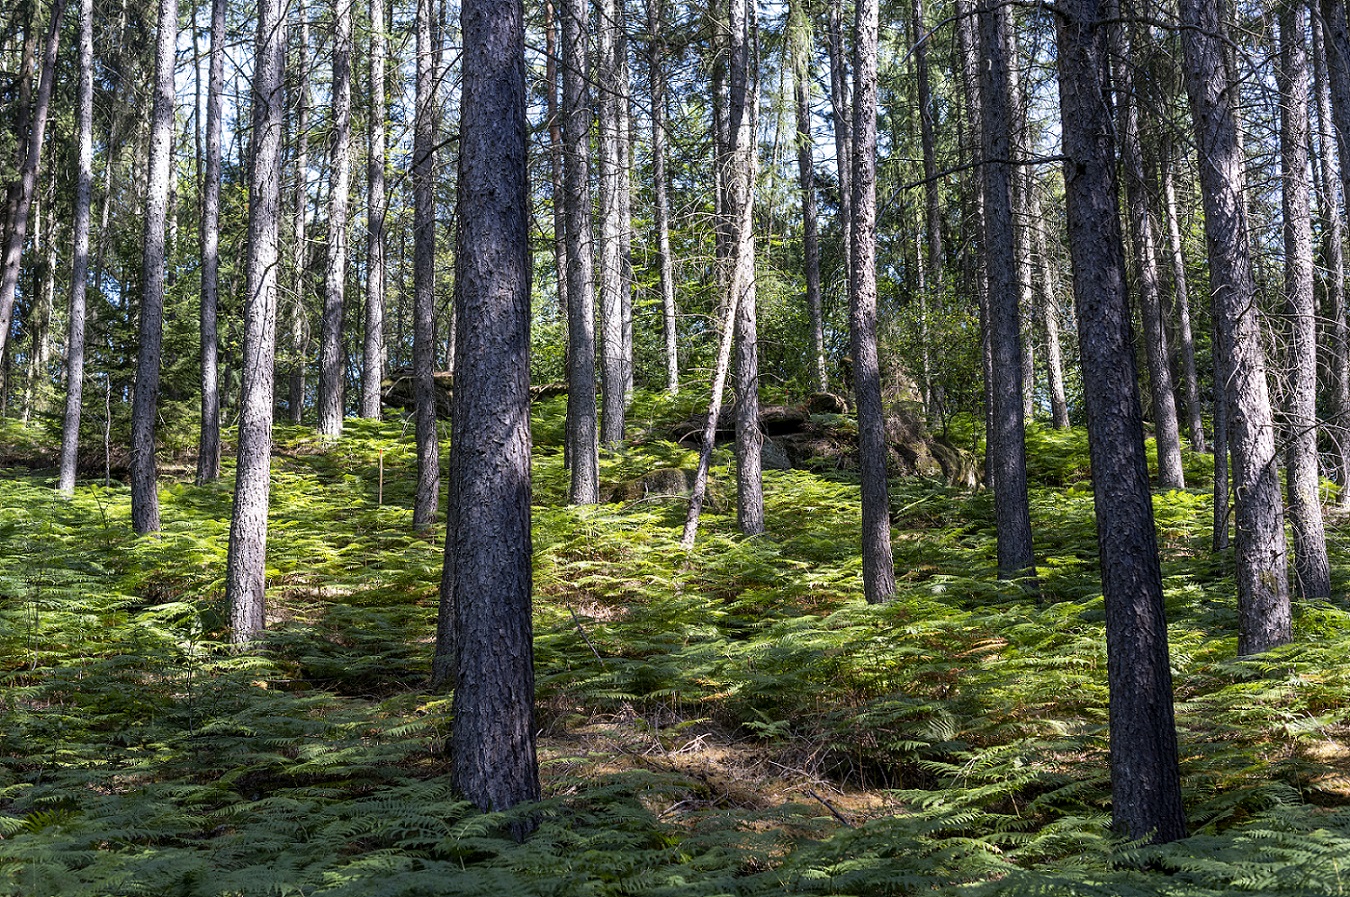 Landschaftsaufnahme von Bäumen im Wald. Der Waldboden ist von Farnen überdeckt.